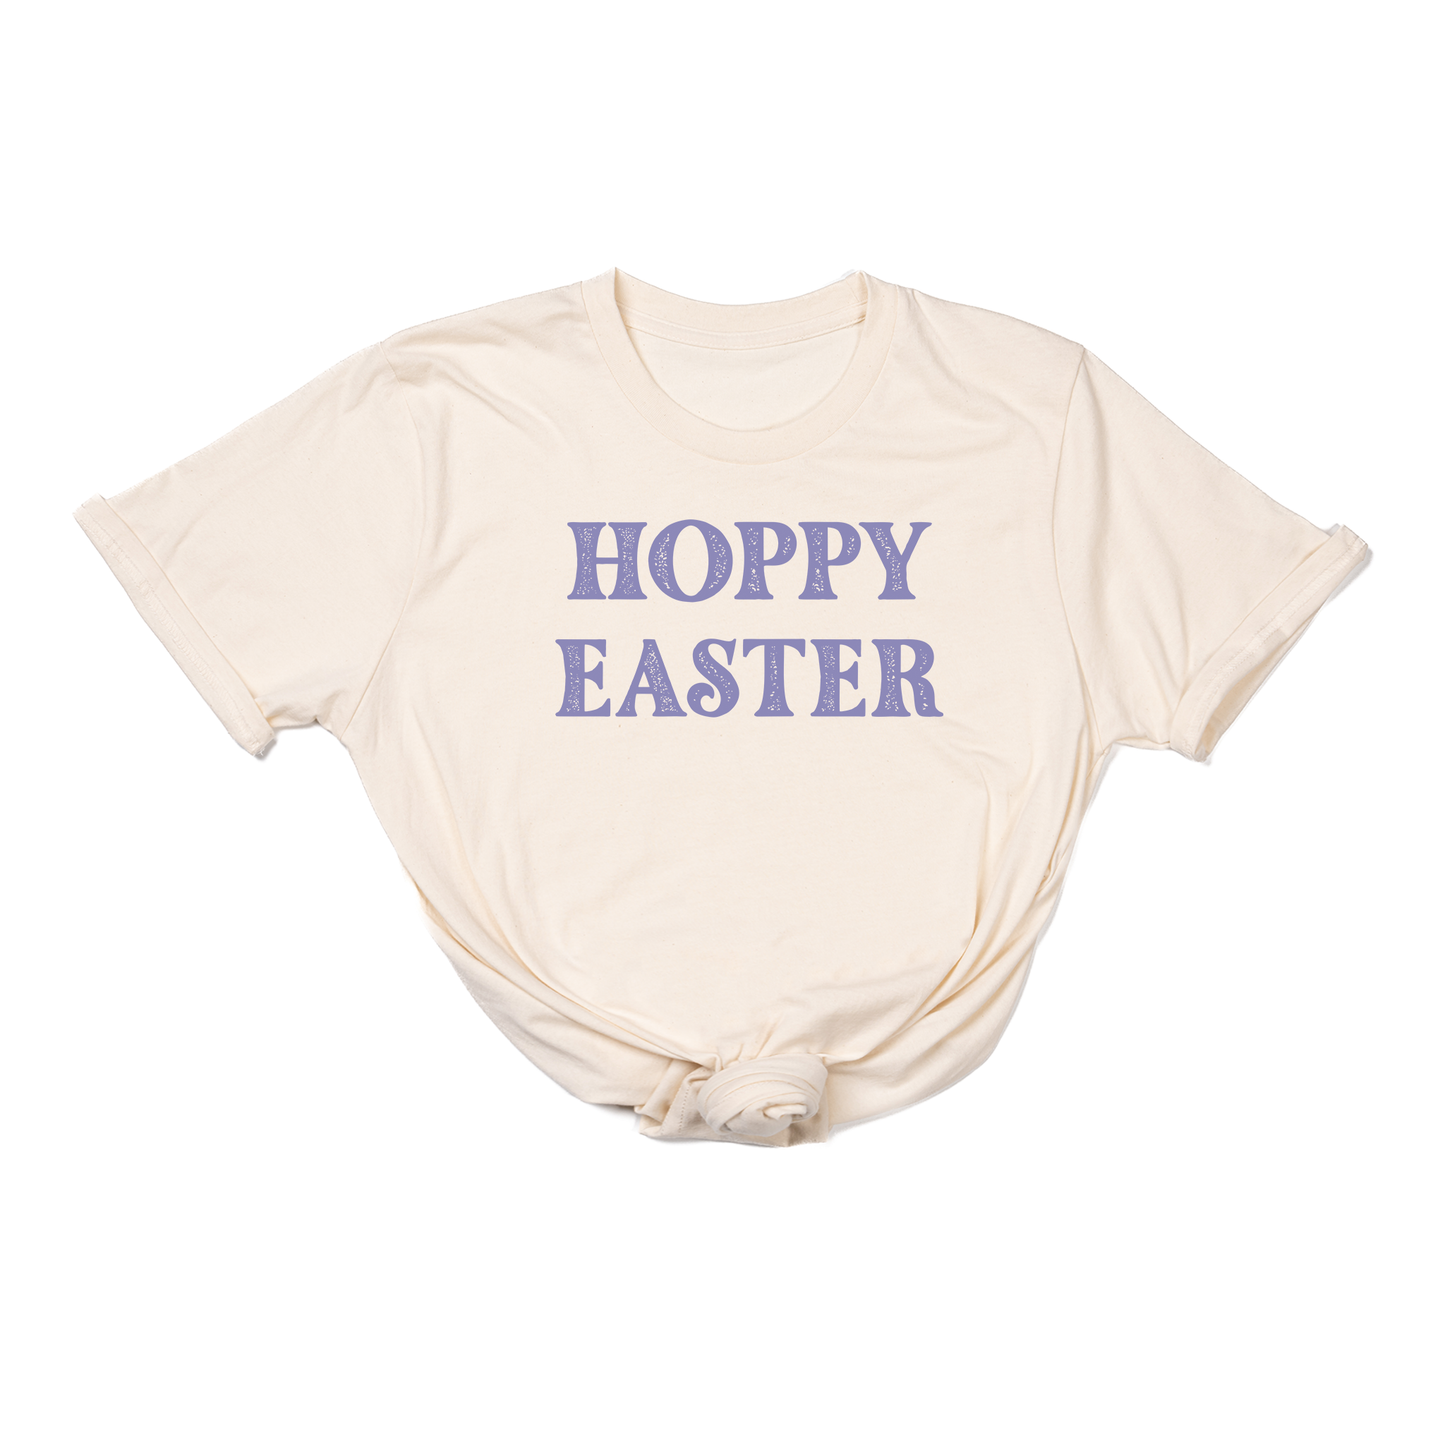 Hoppy Easter - Tee (Natural)